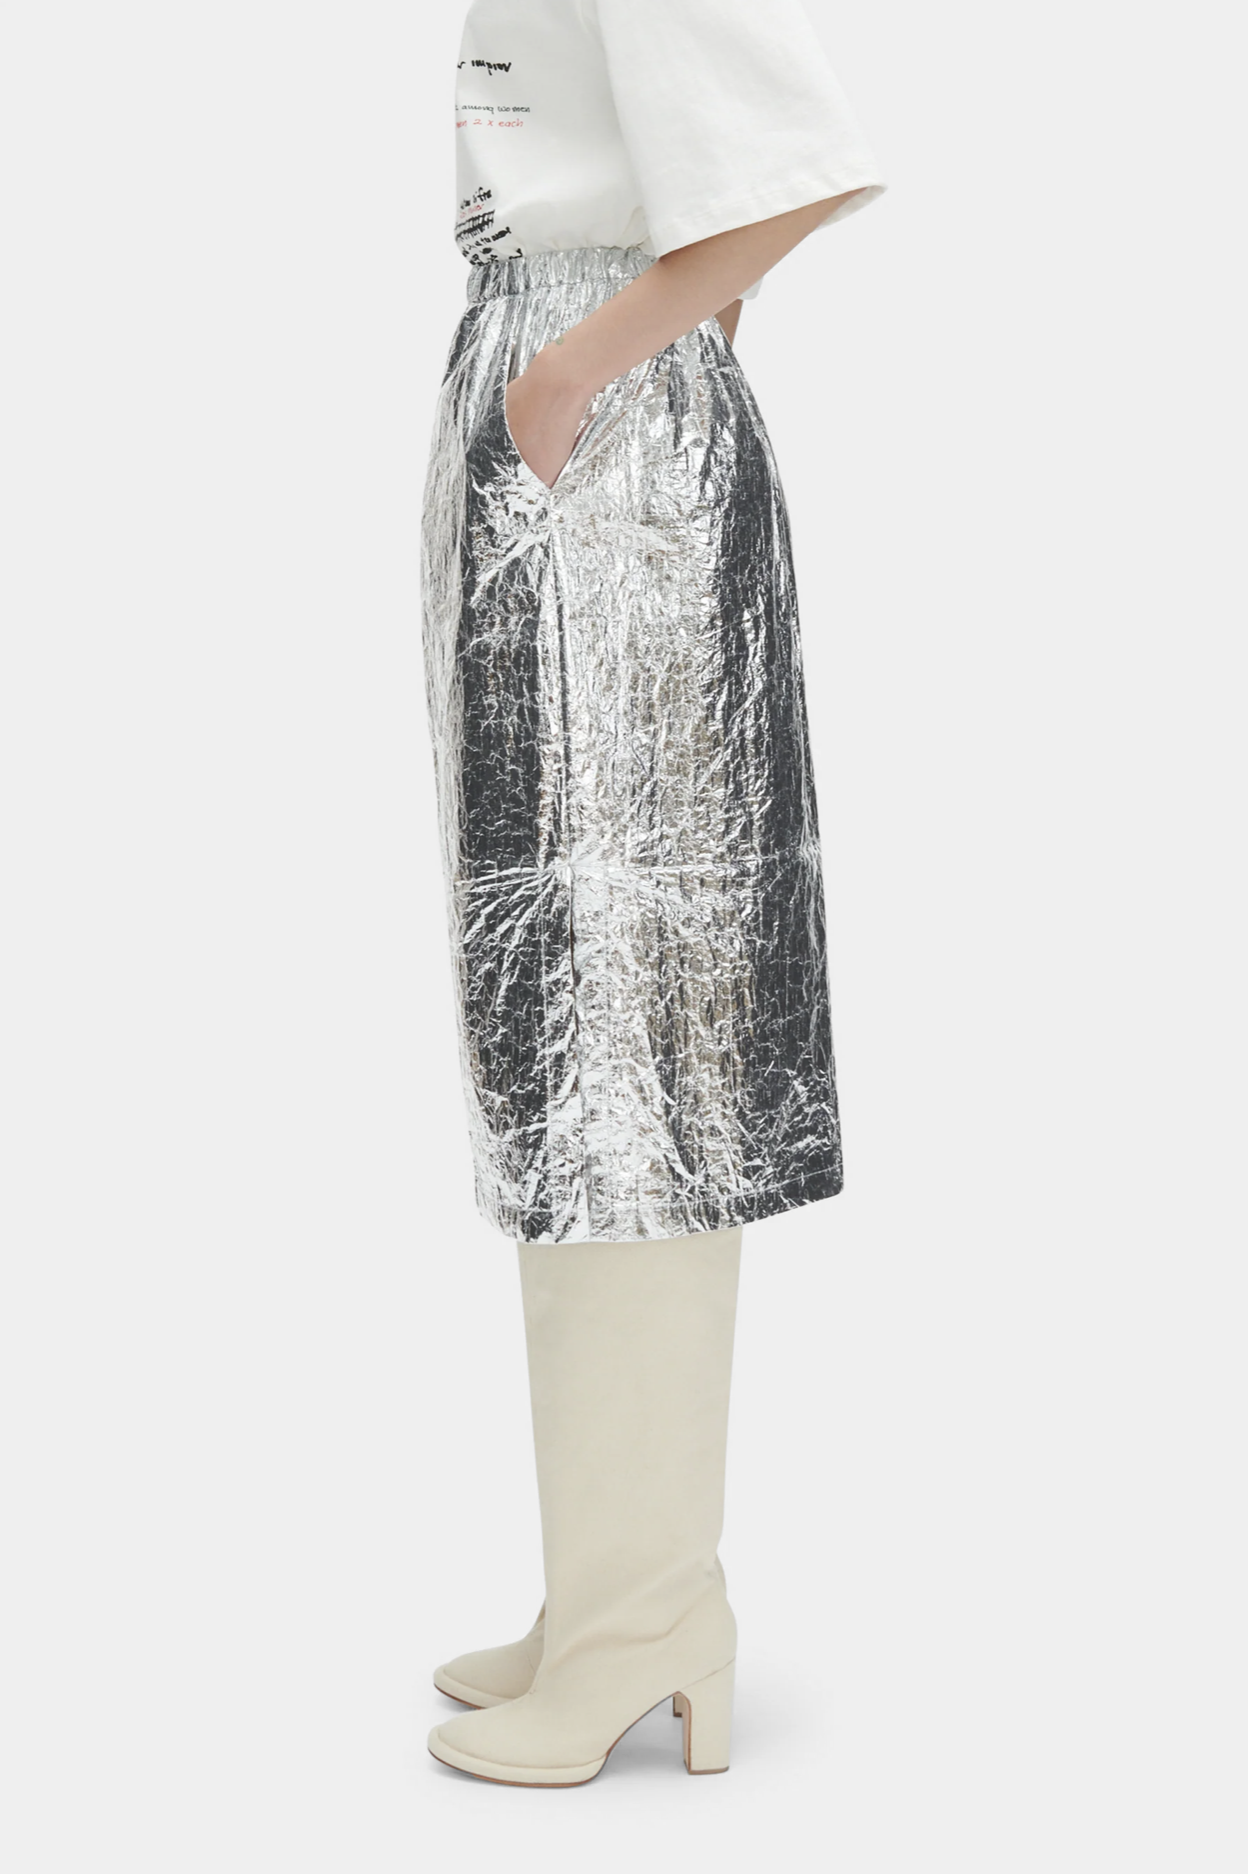 Mott Skirt in Silver by Rachel Comey